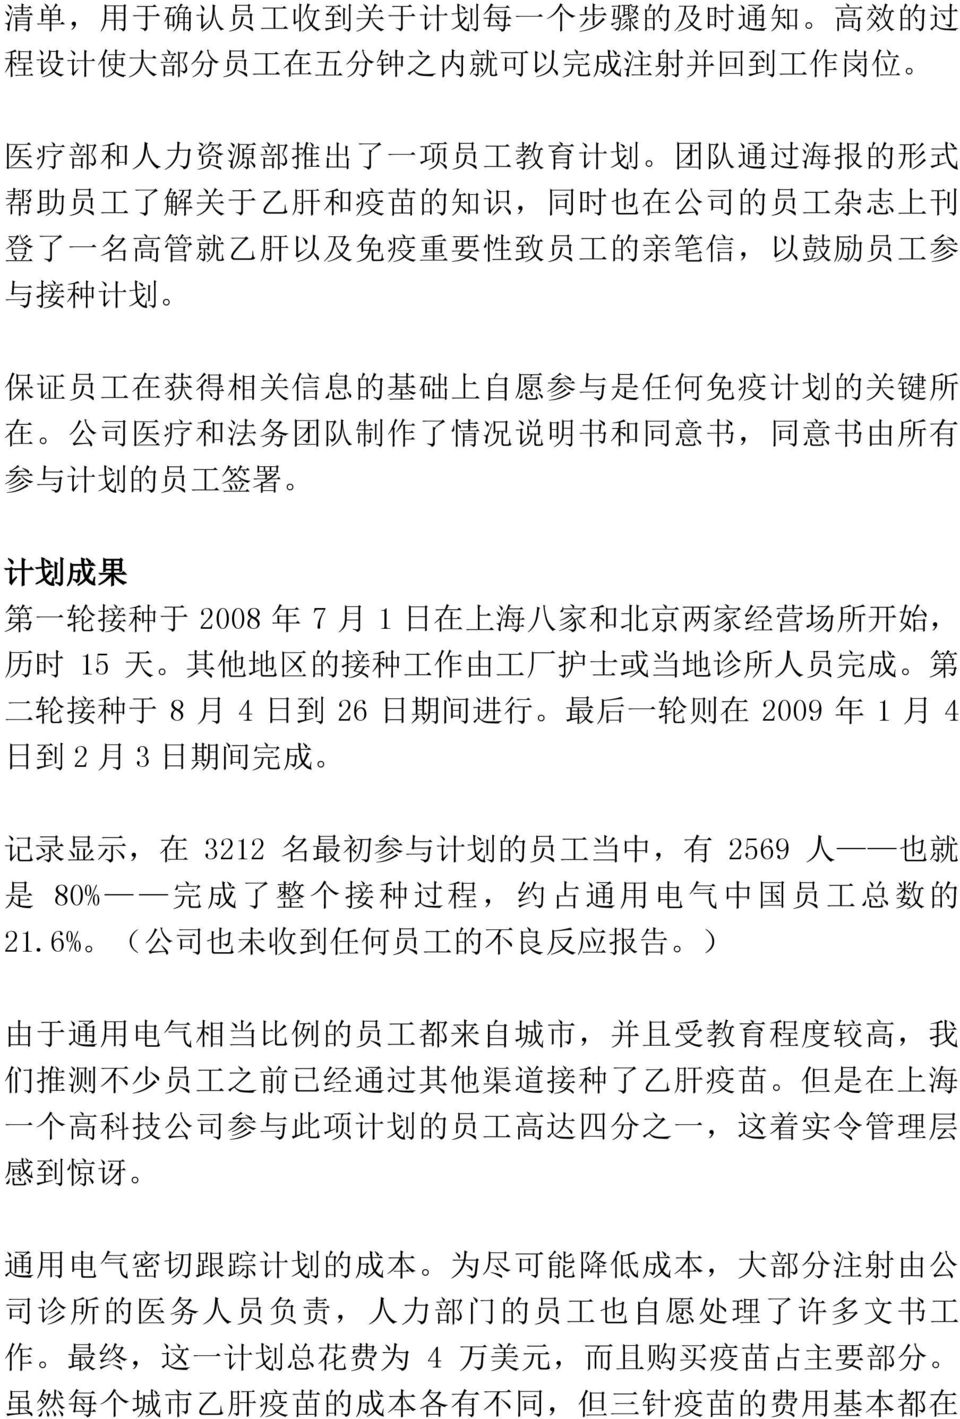 同 意 书, 同 意 书 由 所 有 参 与 计 划 的 员 工 签 署 计 划 成 果 第 一 轮 接 种 于 2008 年 7 月 1 日 在 上 海 八 家 和 北 京 两 家 经 营 场 所 开 始, 历 时 15 天 其 他 地 区 的 接 种 工 作 由 工 厂 护 士 或 当 地 诊 所 人 员 完 成 第 二 轮 接 种 于 8 月 4 日 到 26 日 期 间 进 行 最 后